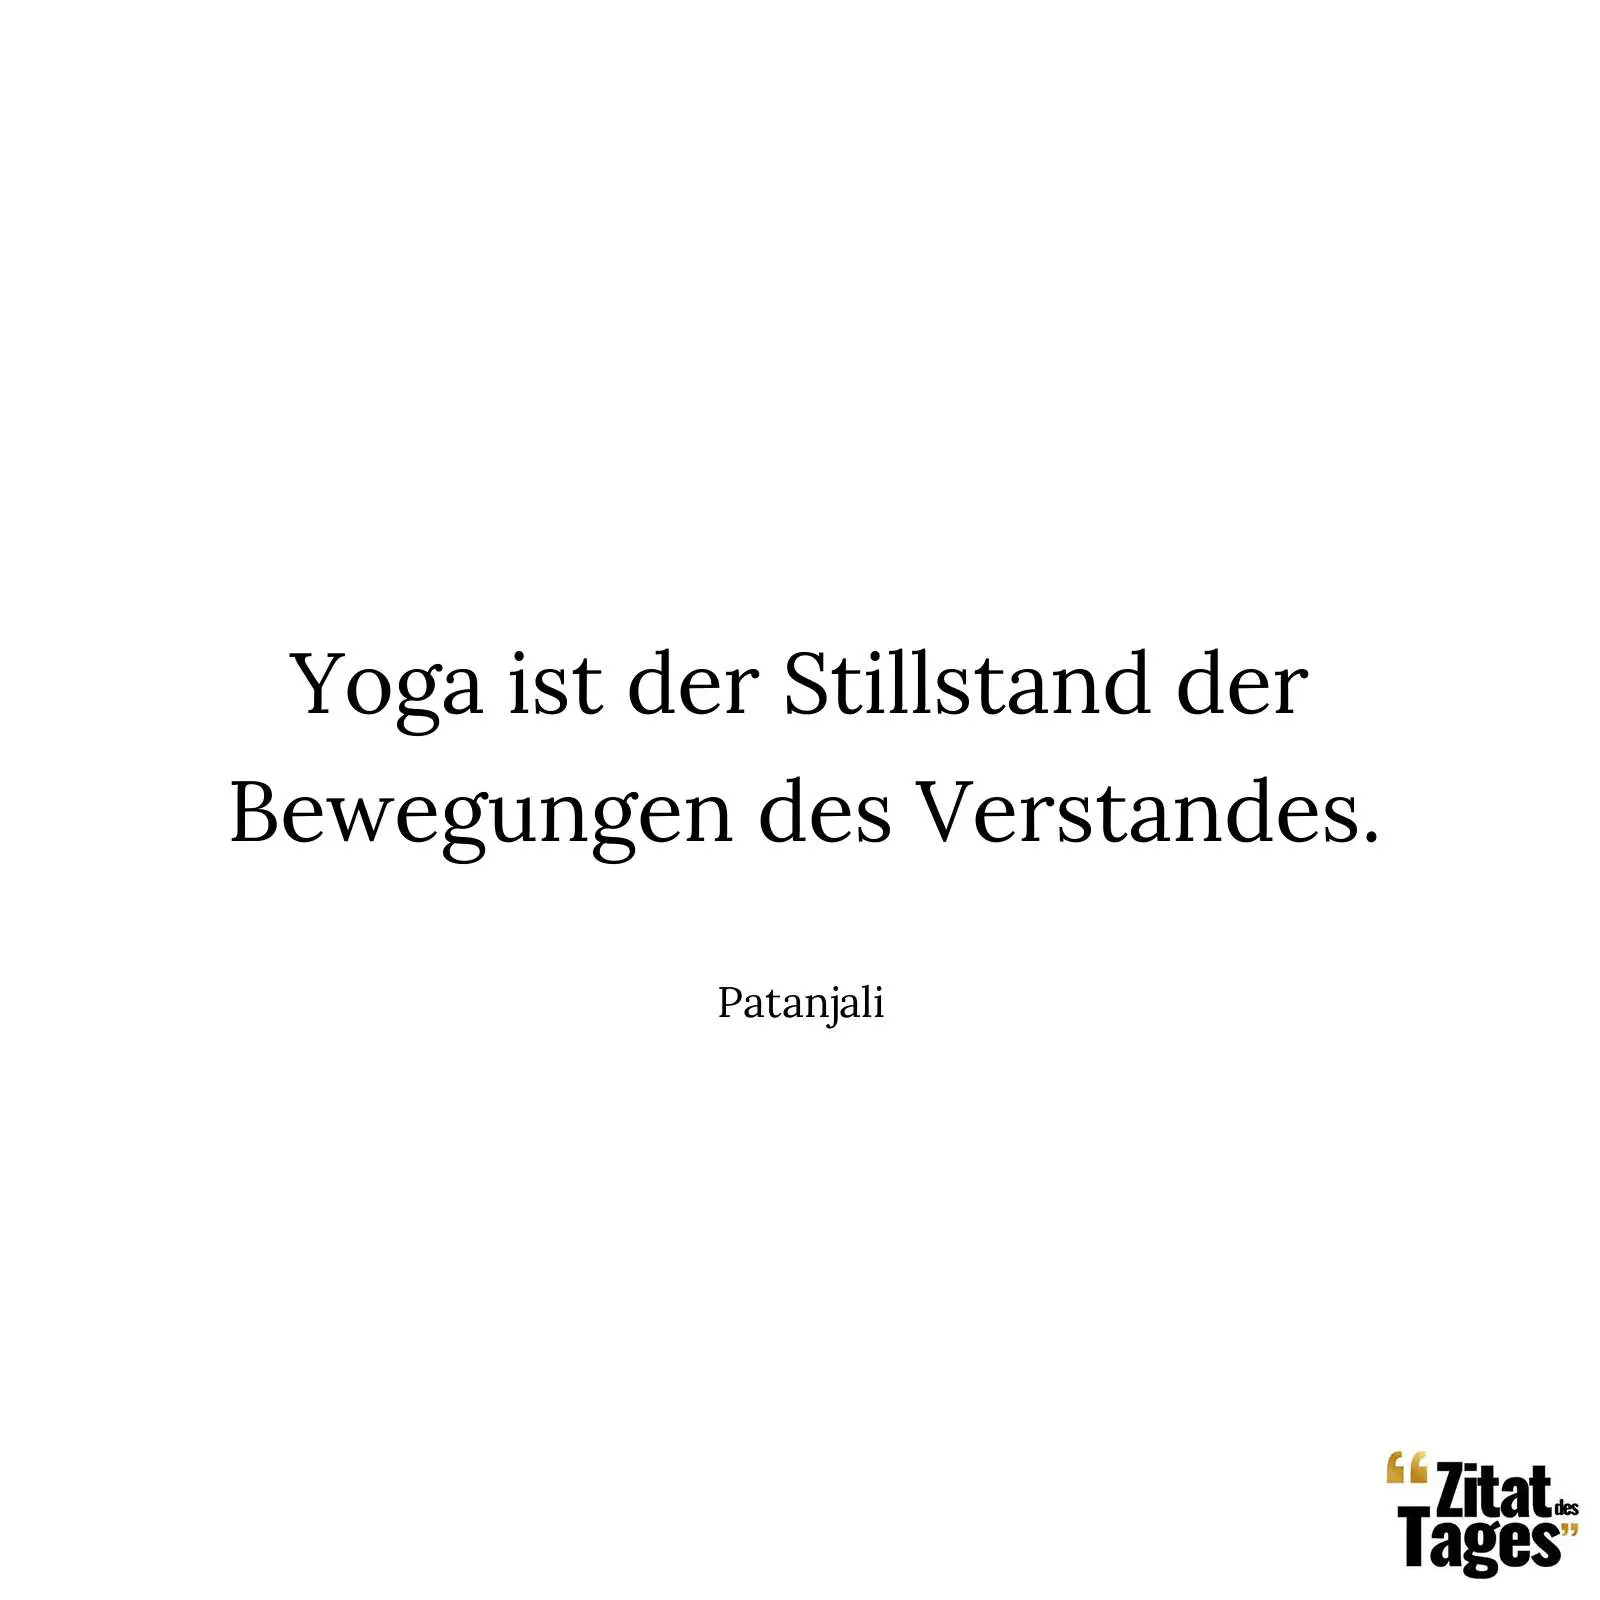 Yoga ist der Stillstand der Bewegungen des Verstandes. - Patanjali